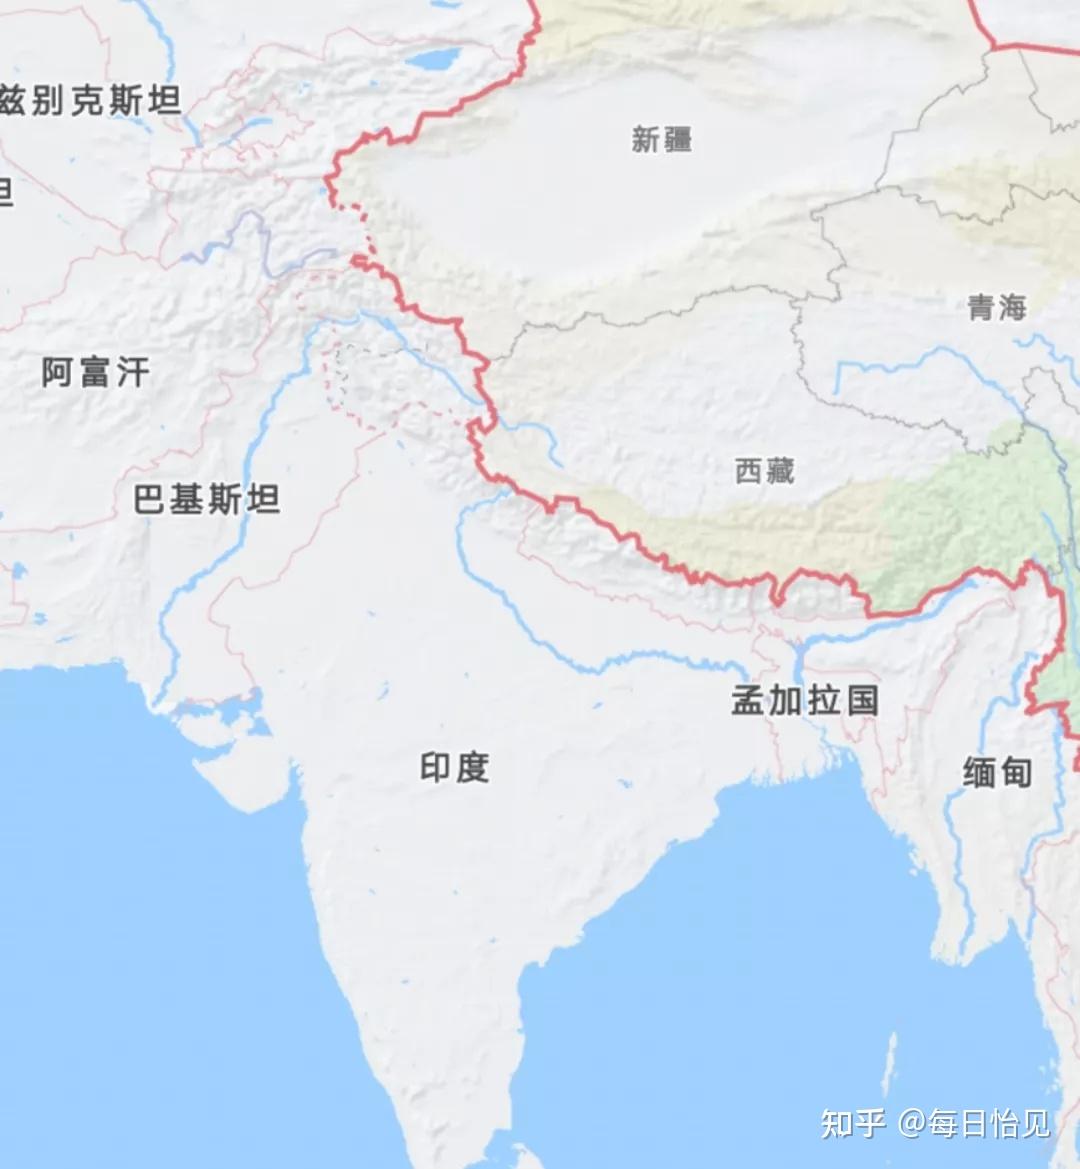 中国和巴基斯坦接壤吗图片